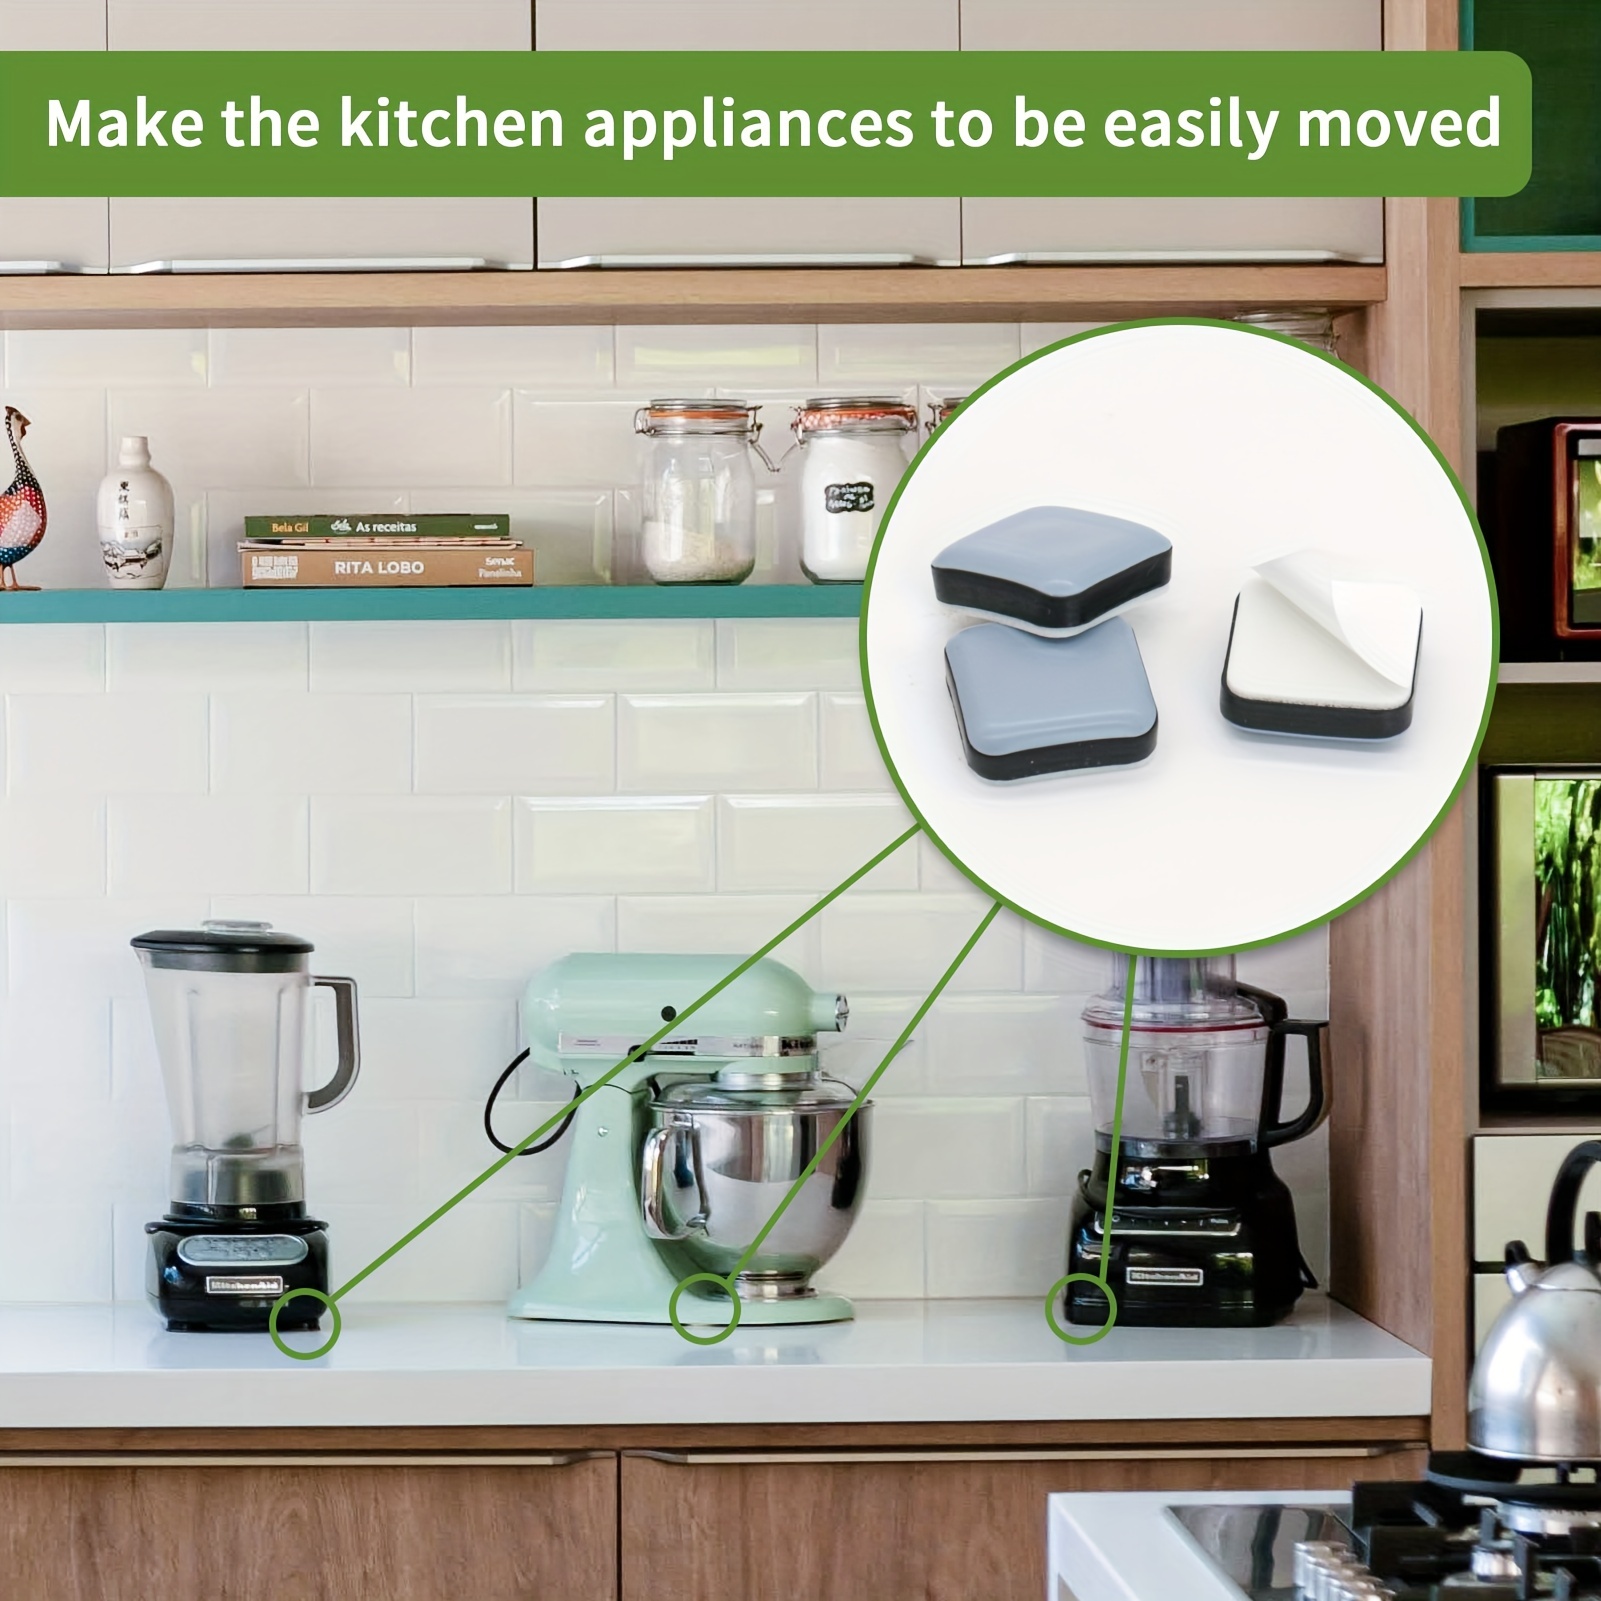 Kitchen Appliance Slider Counter Coffee Maker Kitchen Utensils